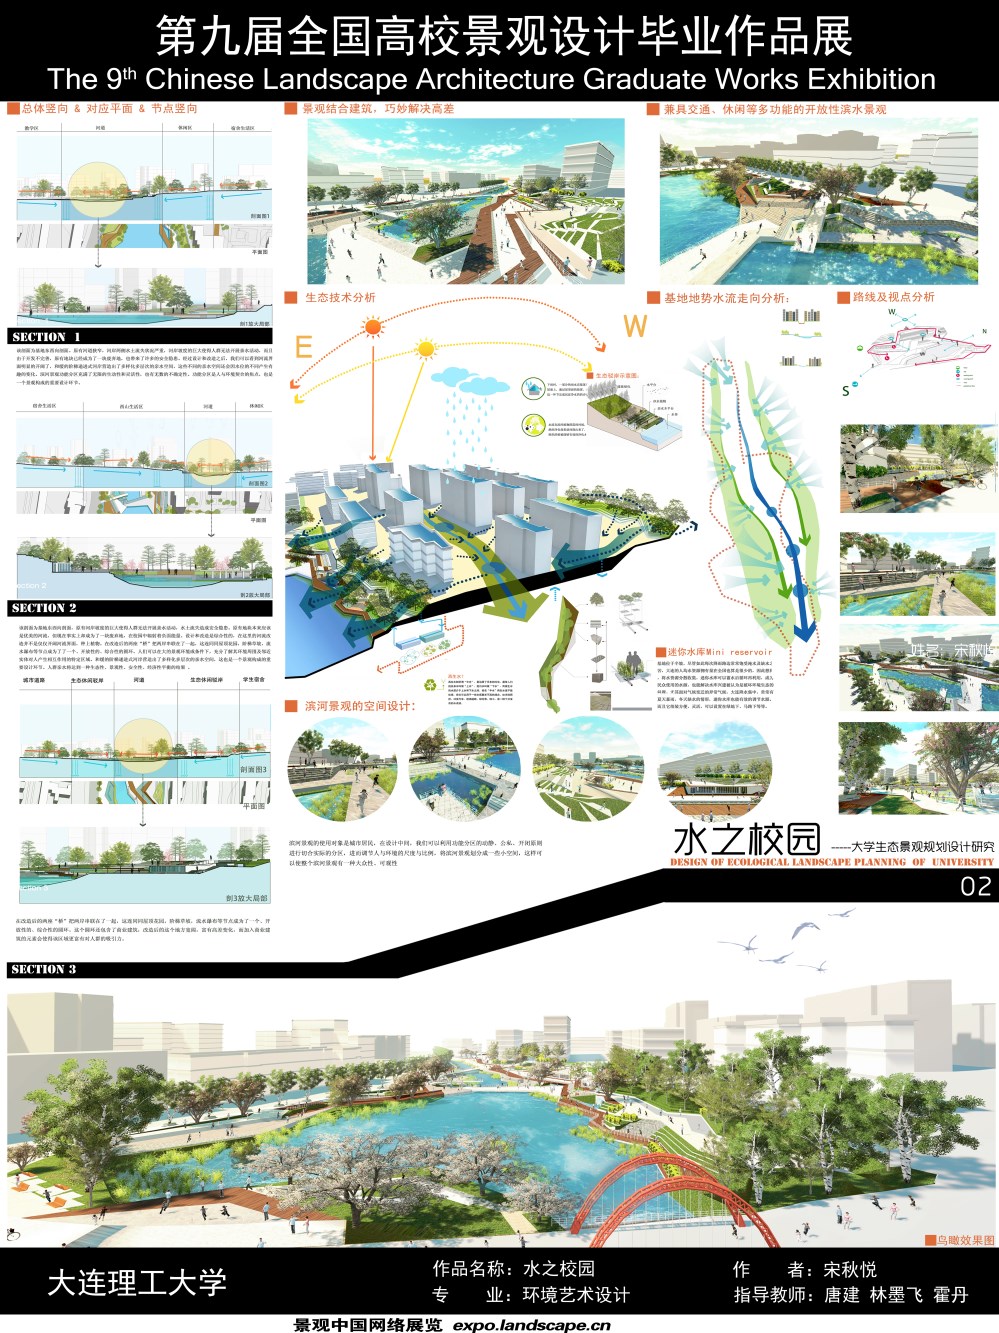 水之校园——校园生态景观规划设计研究-2